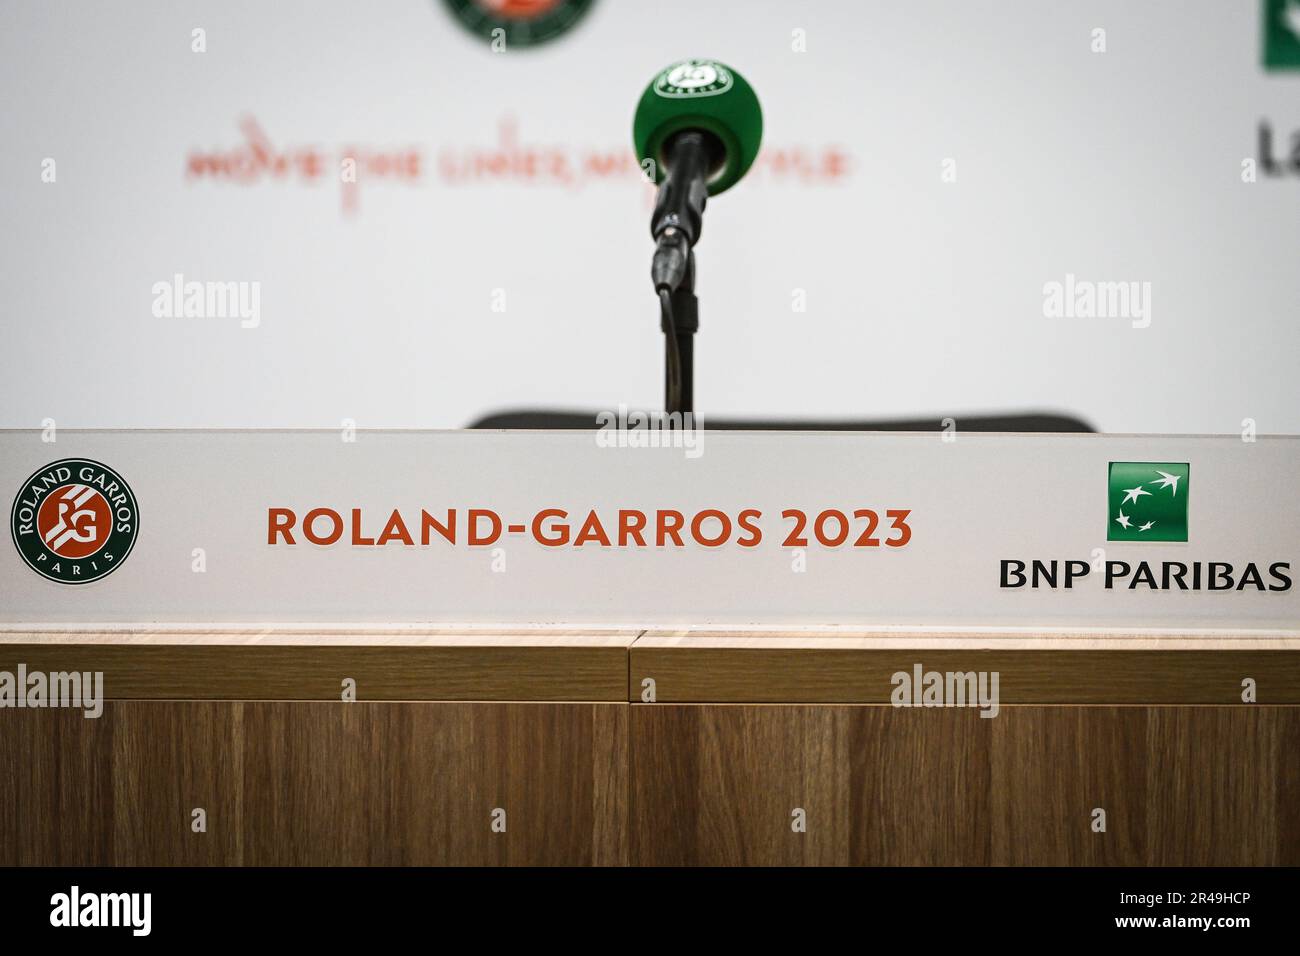 Illustrazione durante Roland-Garros 2023, torneo di tennis Grand Slam, anteprime il 26 maggio 2023 allo stadio Roland-Garros di Parigi, Francia - Foto: Matthieu Mirville/DPPI/LiveMedia Foto Stock